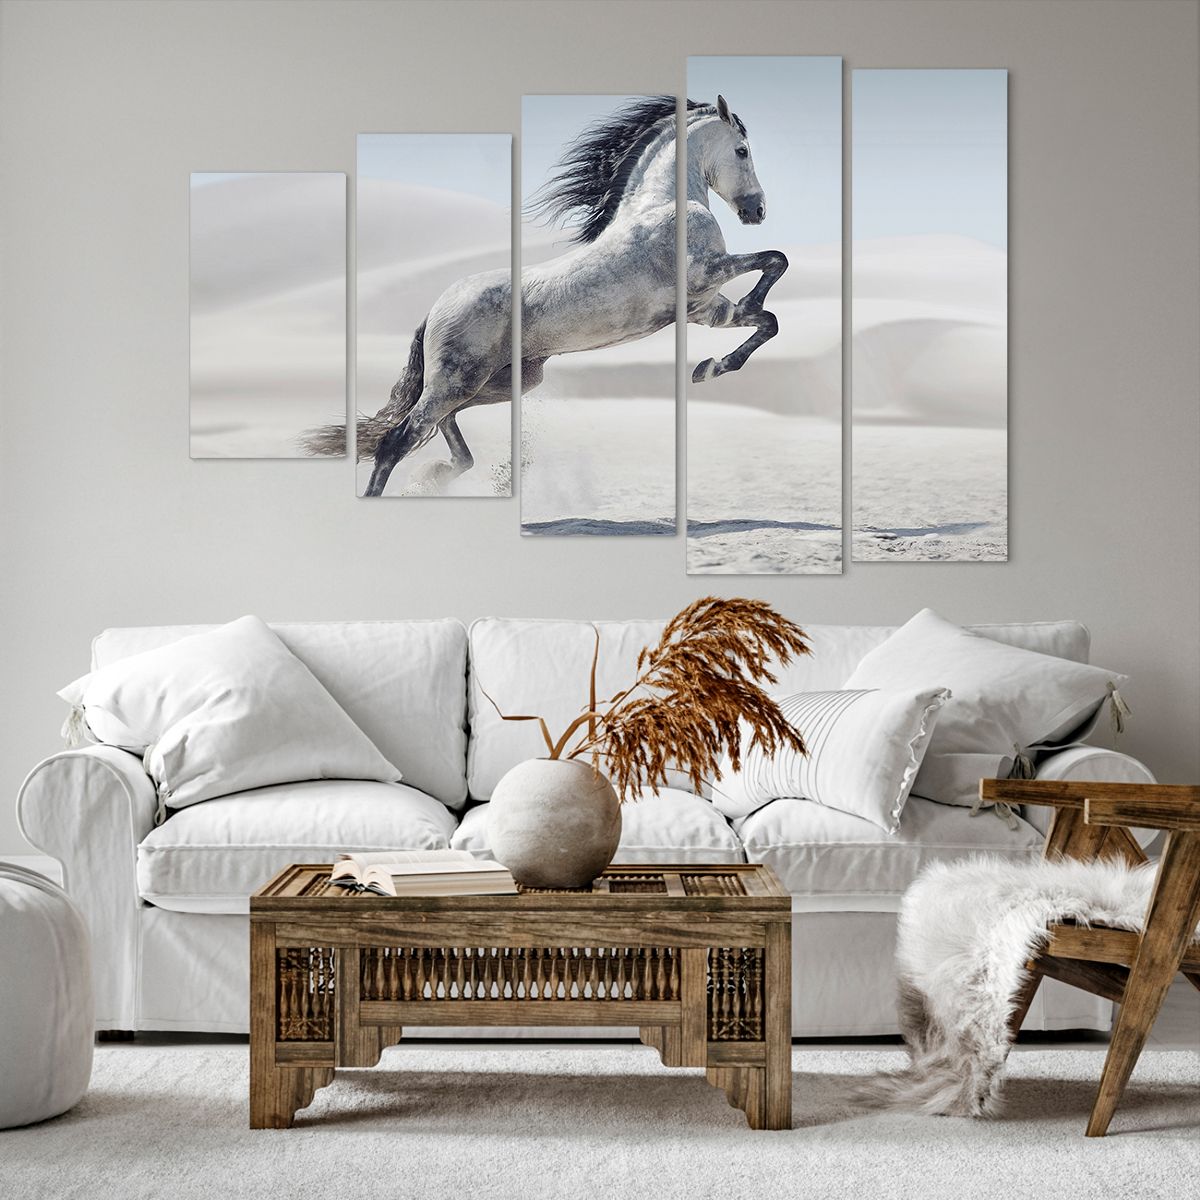 Obrazy na płótnie Zwierzęta, Obrazy na płótnie Koń, Obrazy na płótnie Koń W Galopie, Obrazy na płótnie Natura, Obrazy na płótnie Piasek